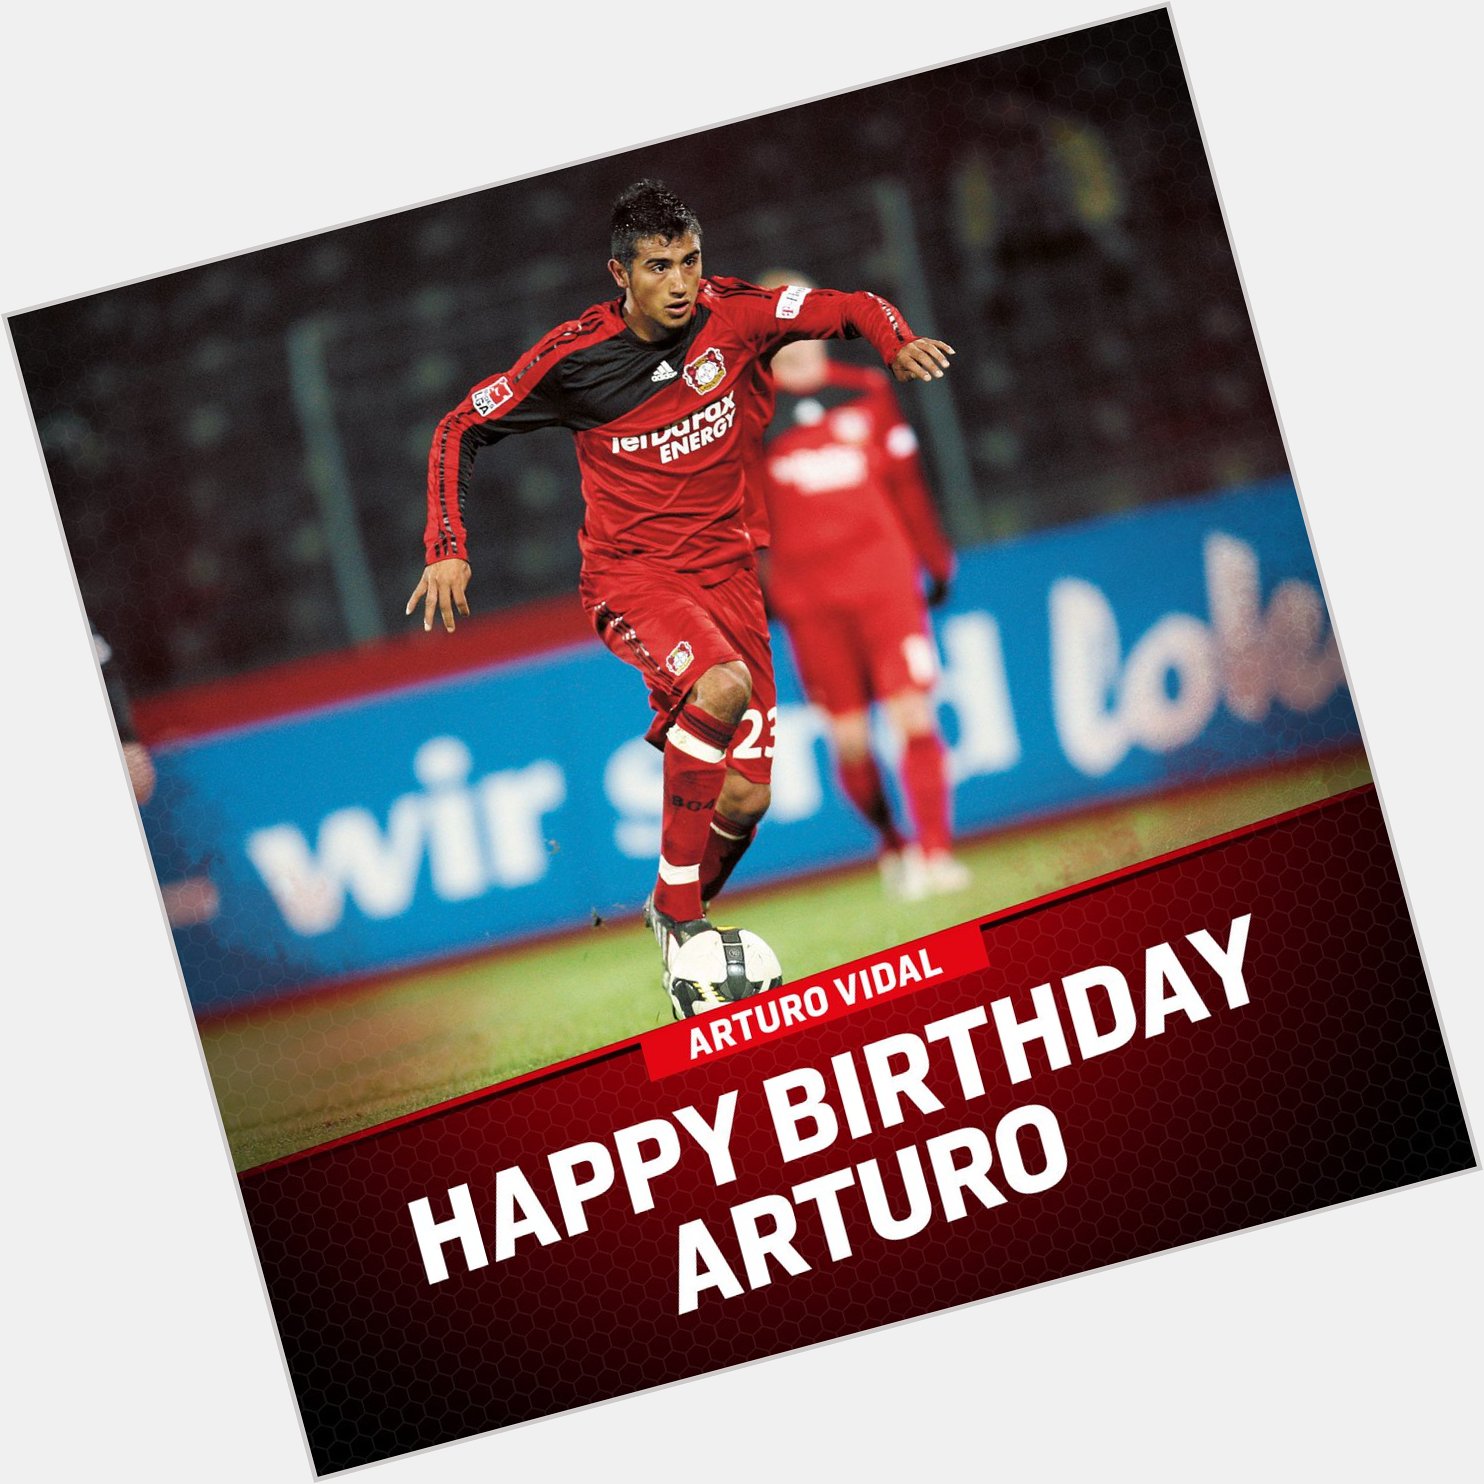  HAPPY BIRTHDAY Also celebrating a birthday today, Arturo Vidal! 

Happy 31st 